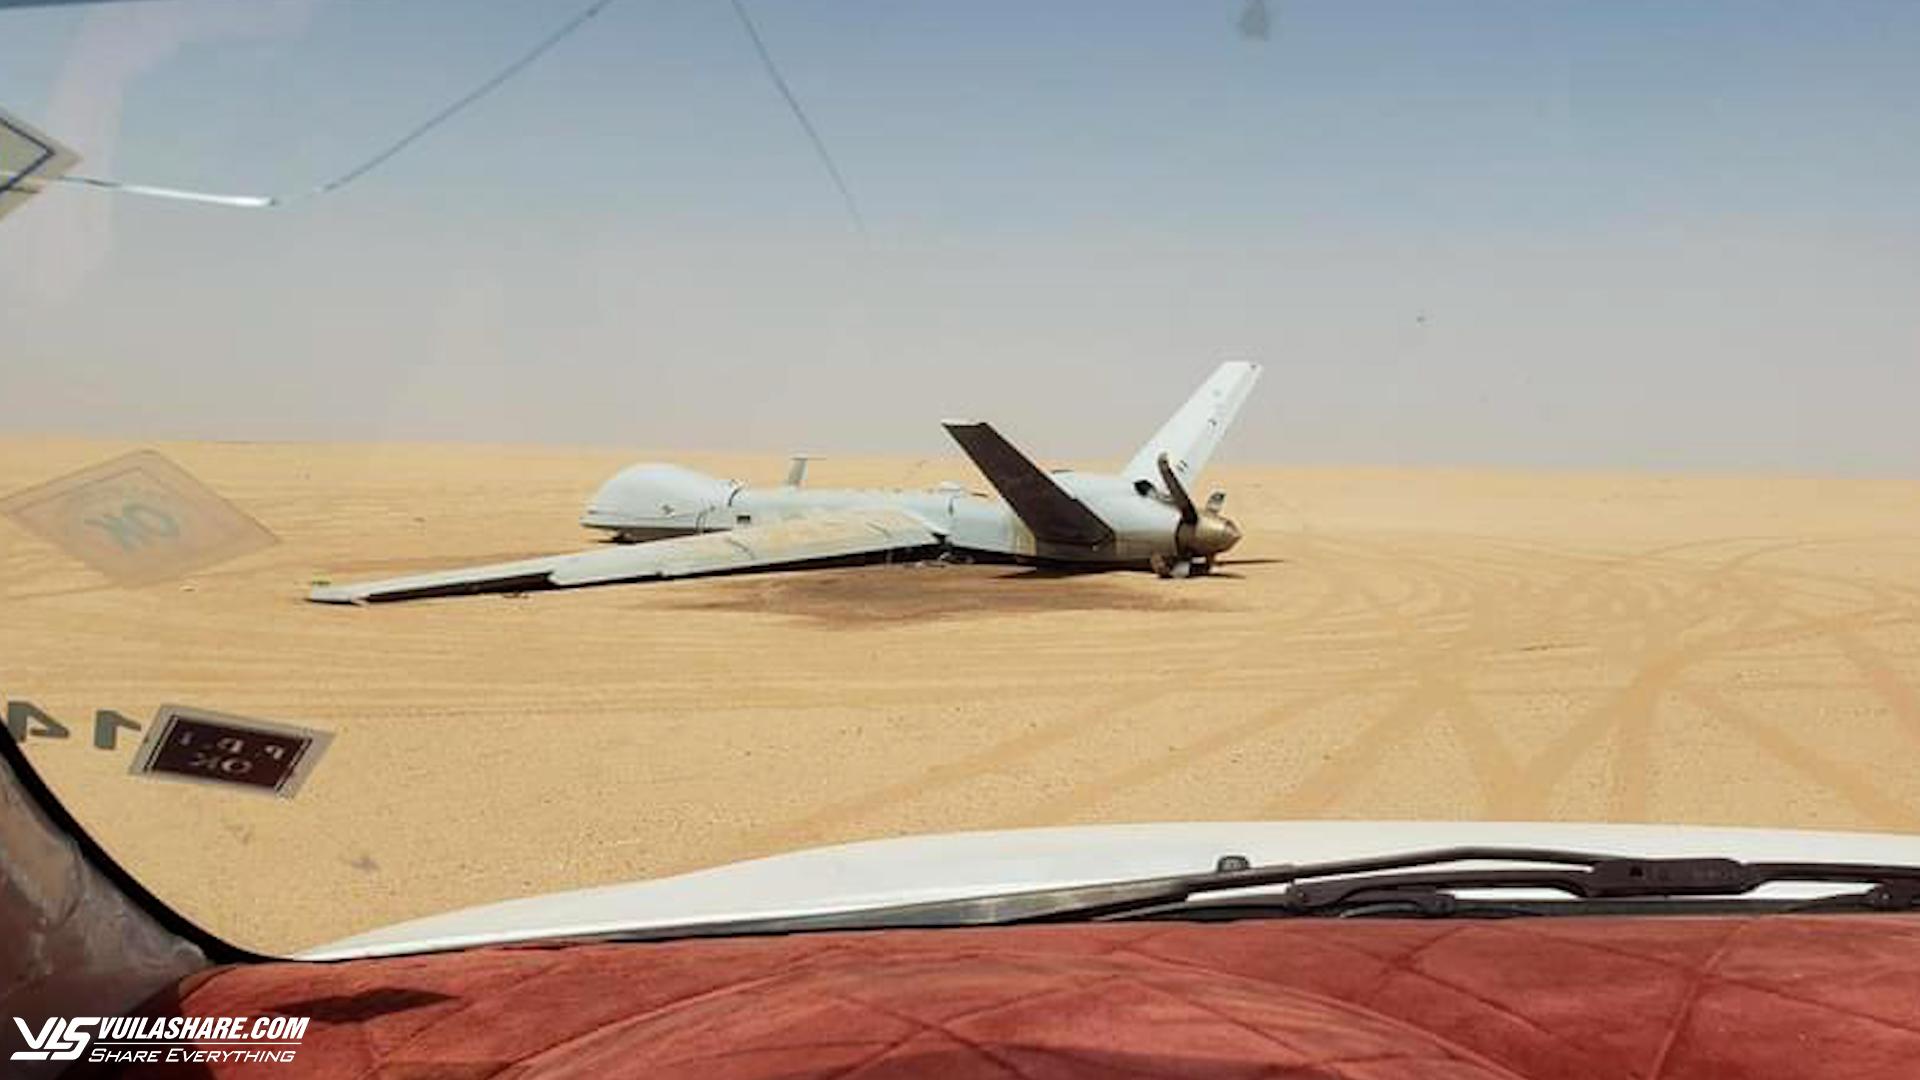 Thêm một UAV MQ-9 của Mỹ bị Houthi bắn phơi xác trên sa mạc Yemen?- Ảnh 1.